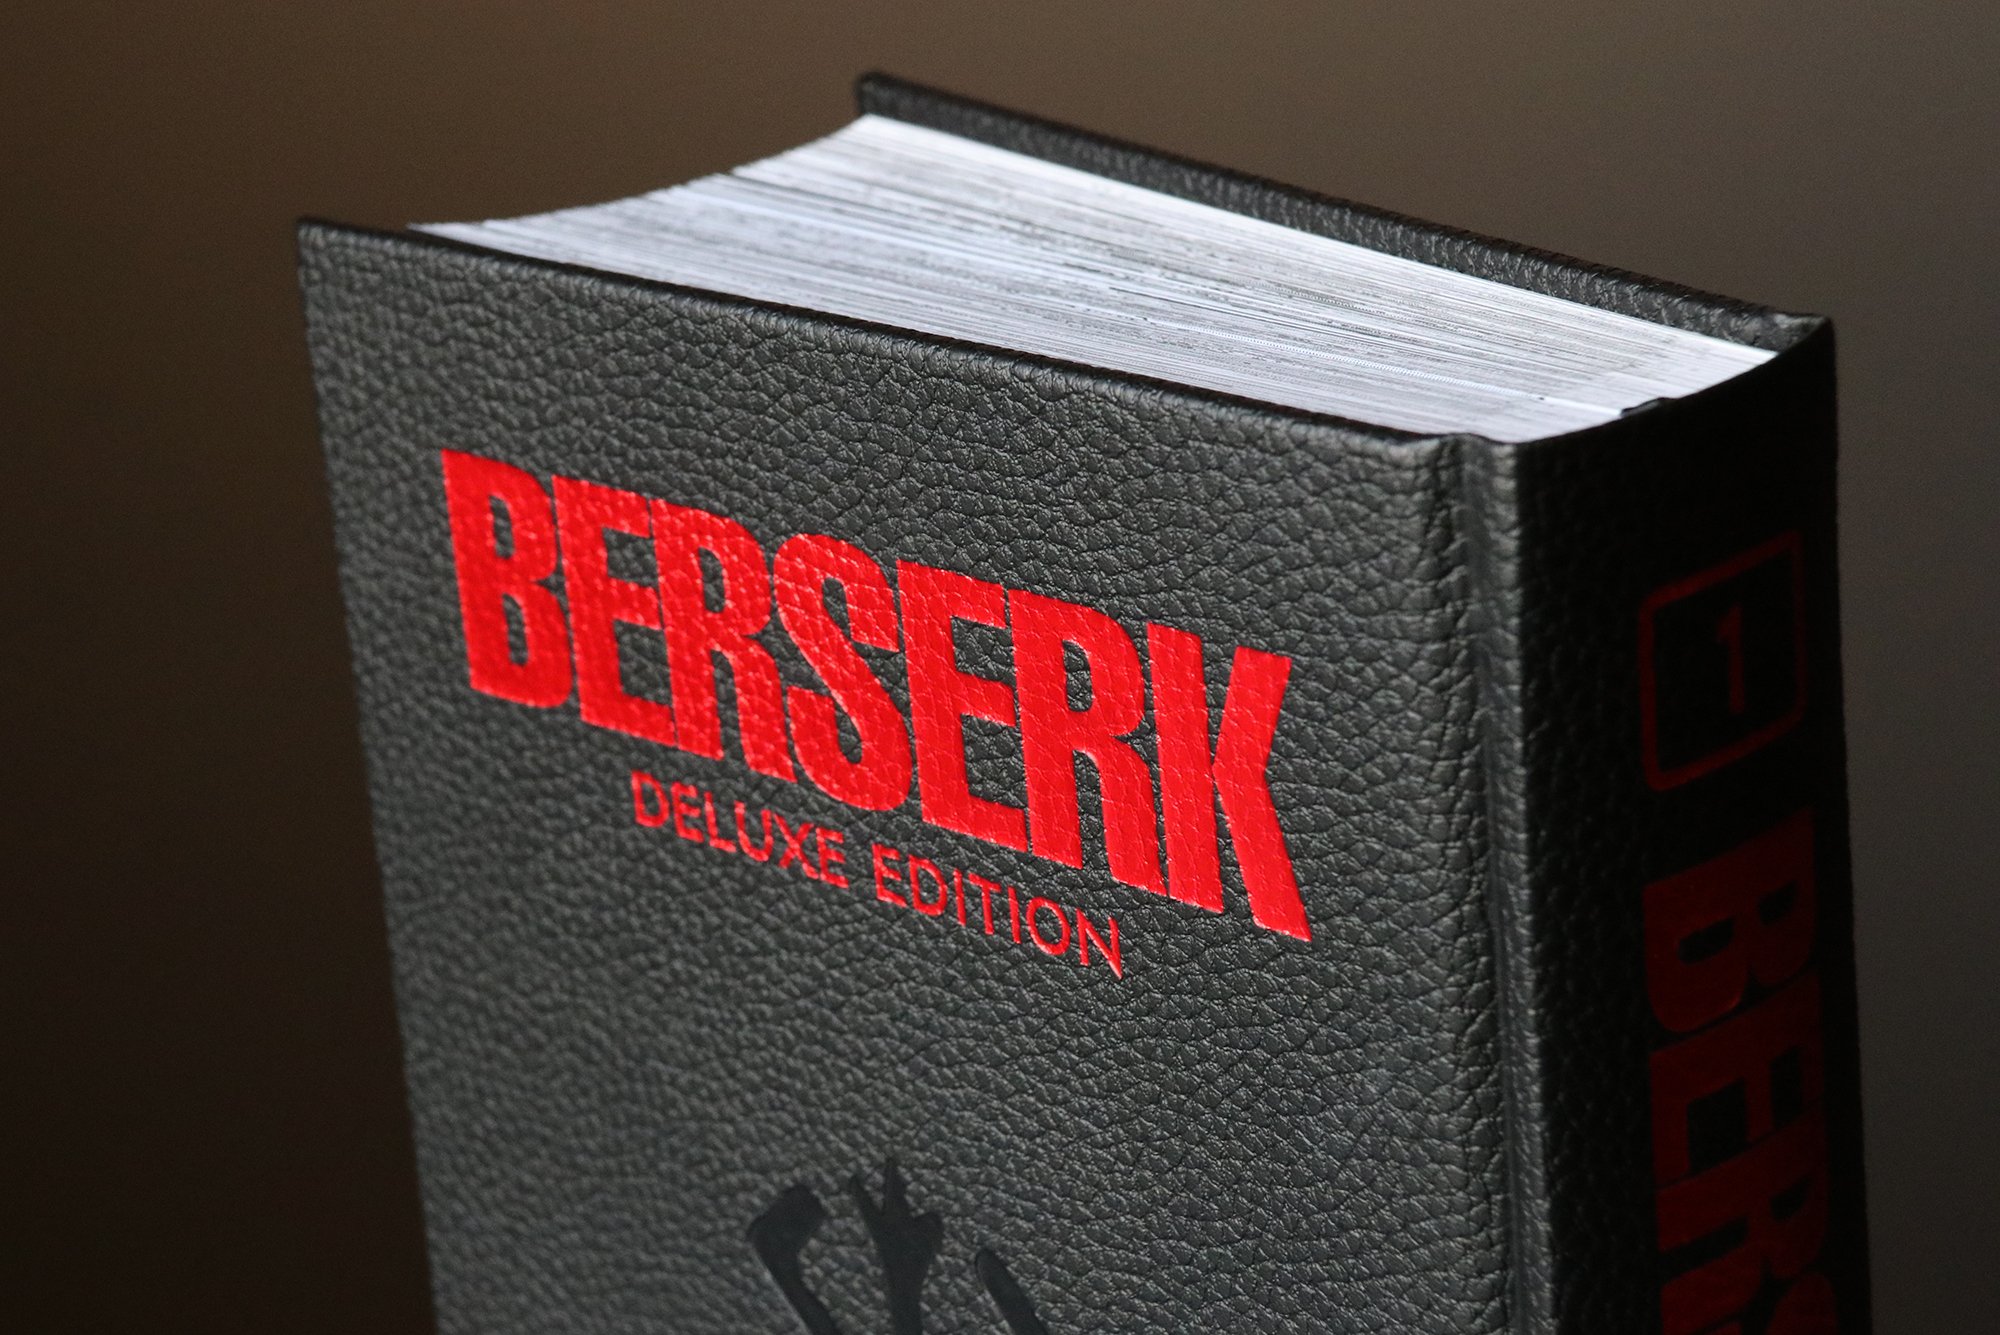 BERSERK 1 Deluxe Edition